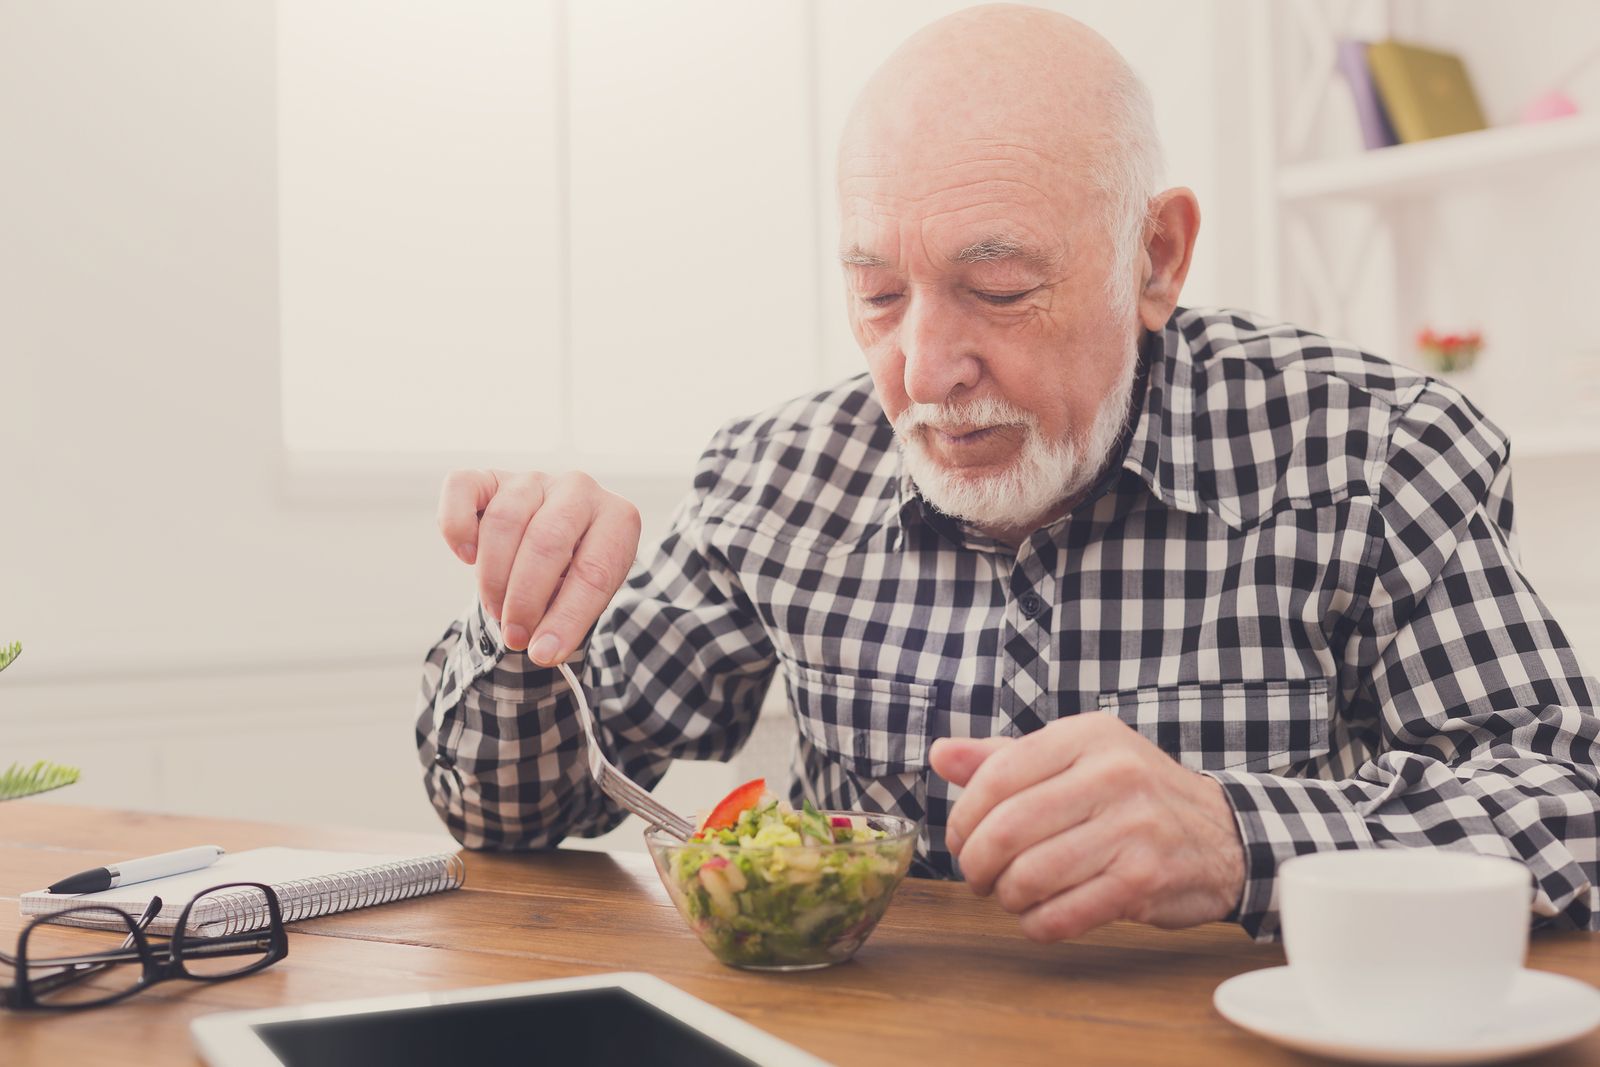 Seguir una dieta adecuada ayuda a mantener la capacidad auditiva en las personas mayores